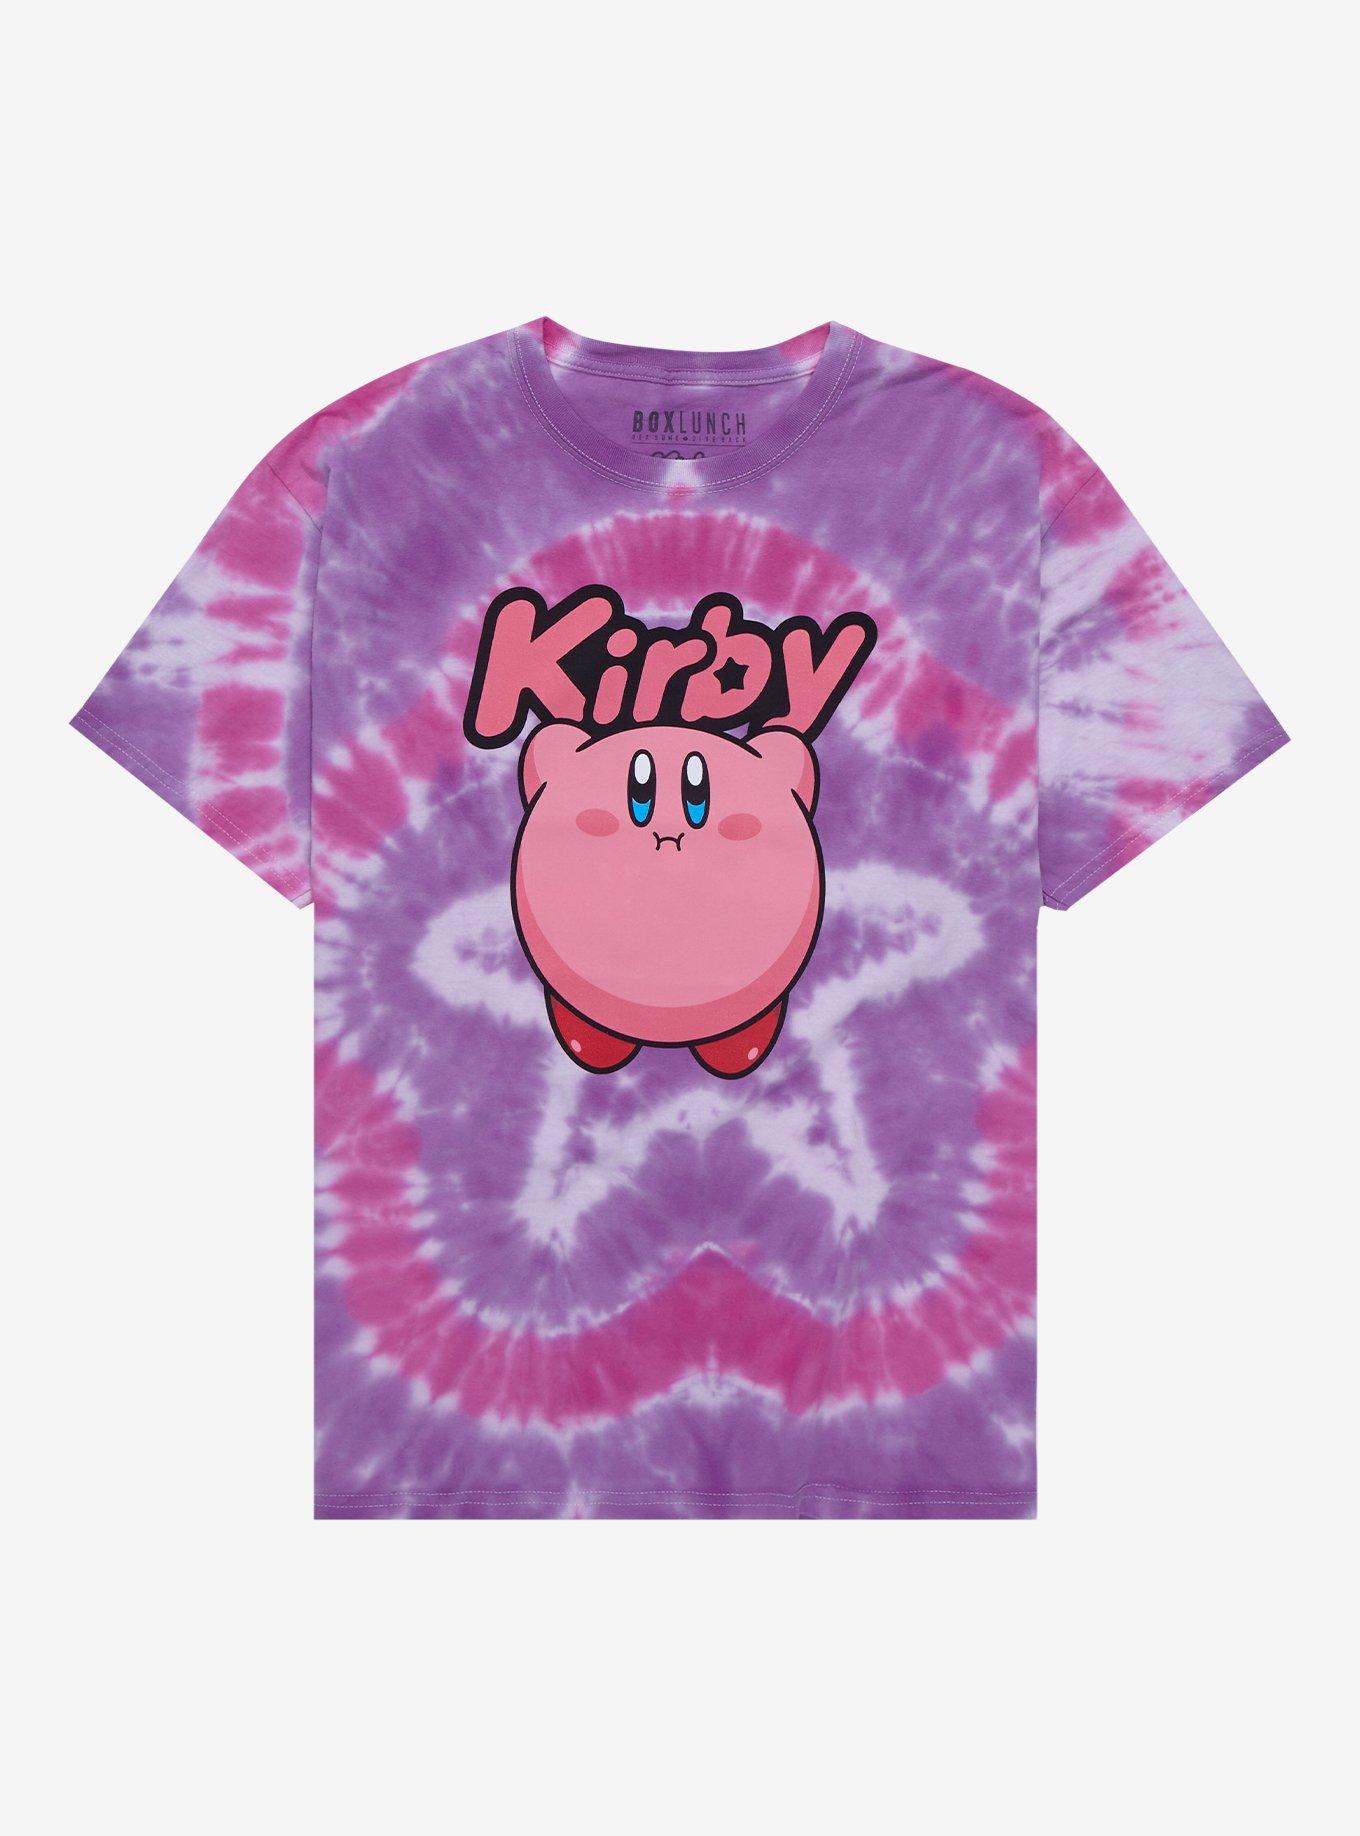 Kirby Drinks Bottles - Purple Moon 1